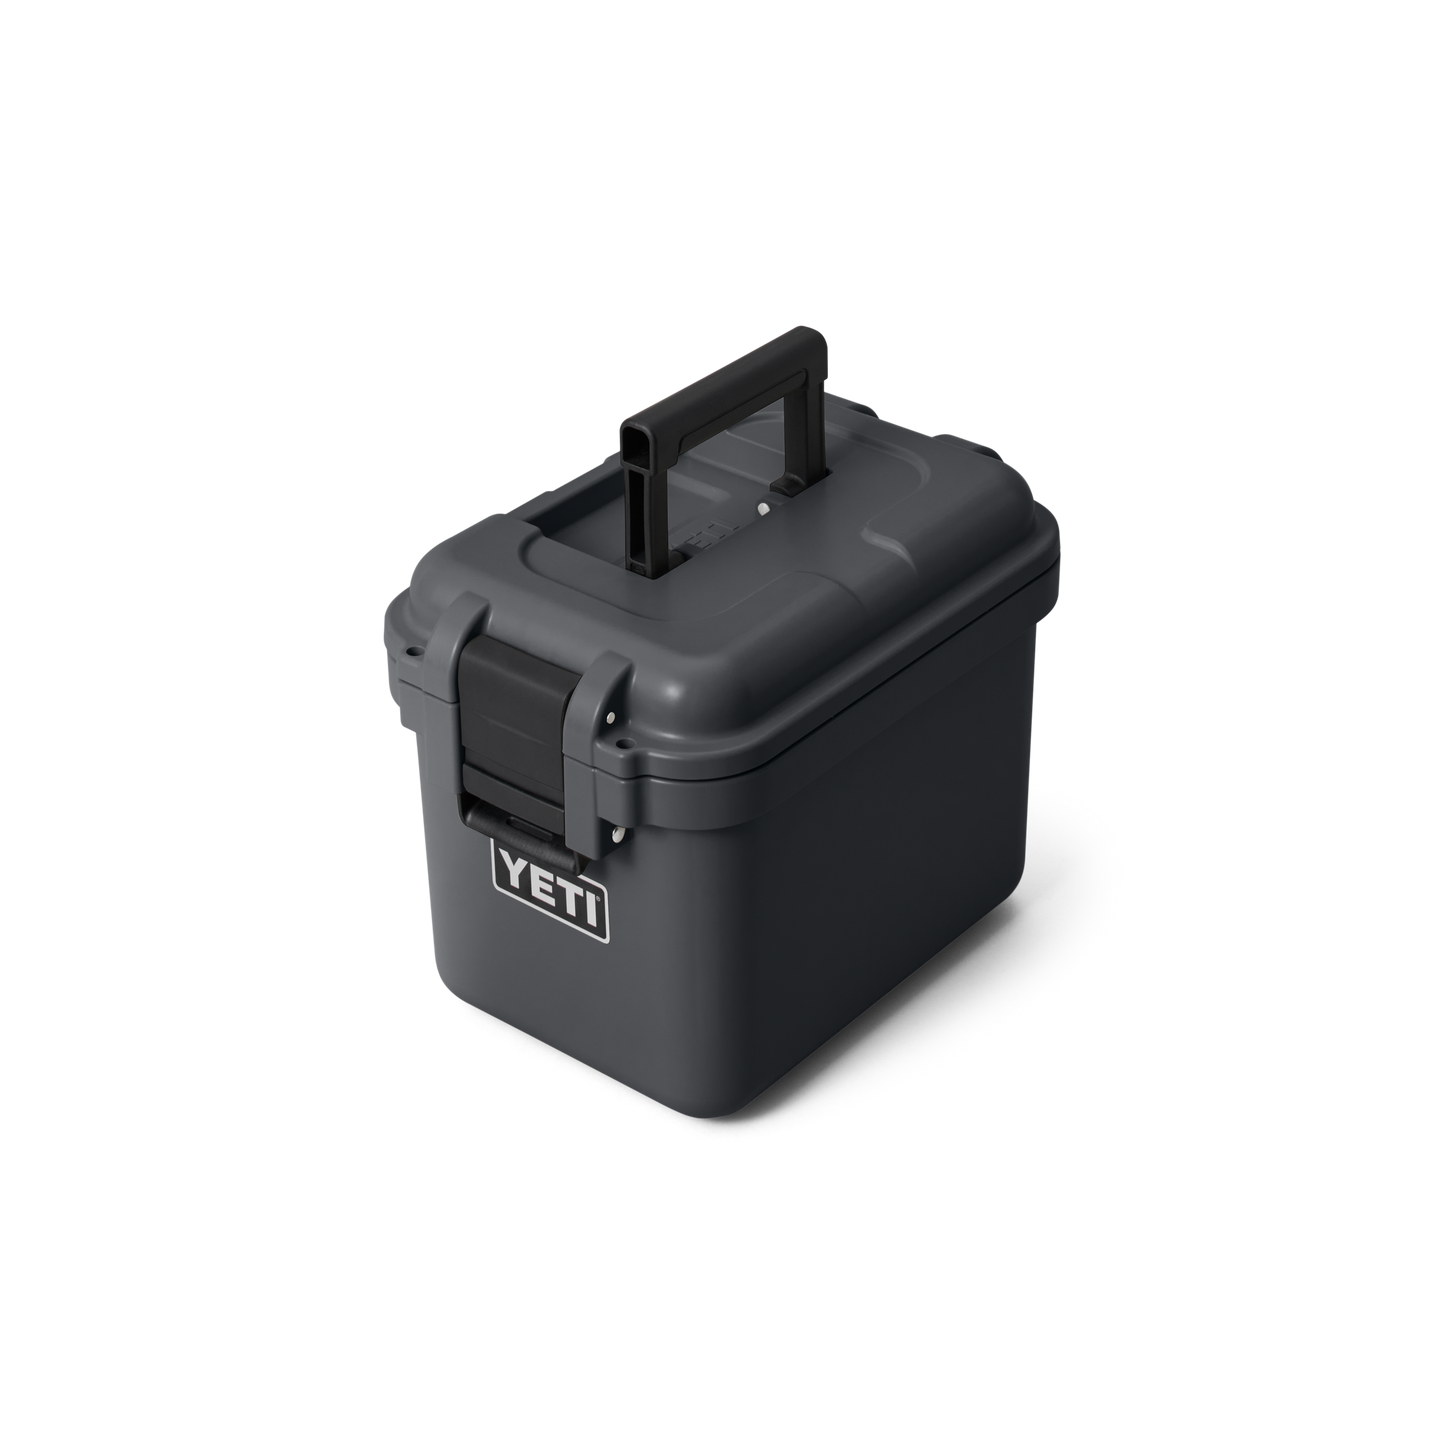 YETI LoadOut® gobox 15 Gear Case charcoal